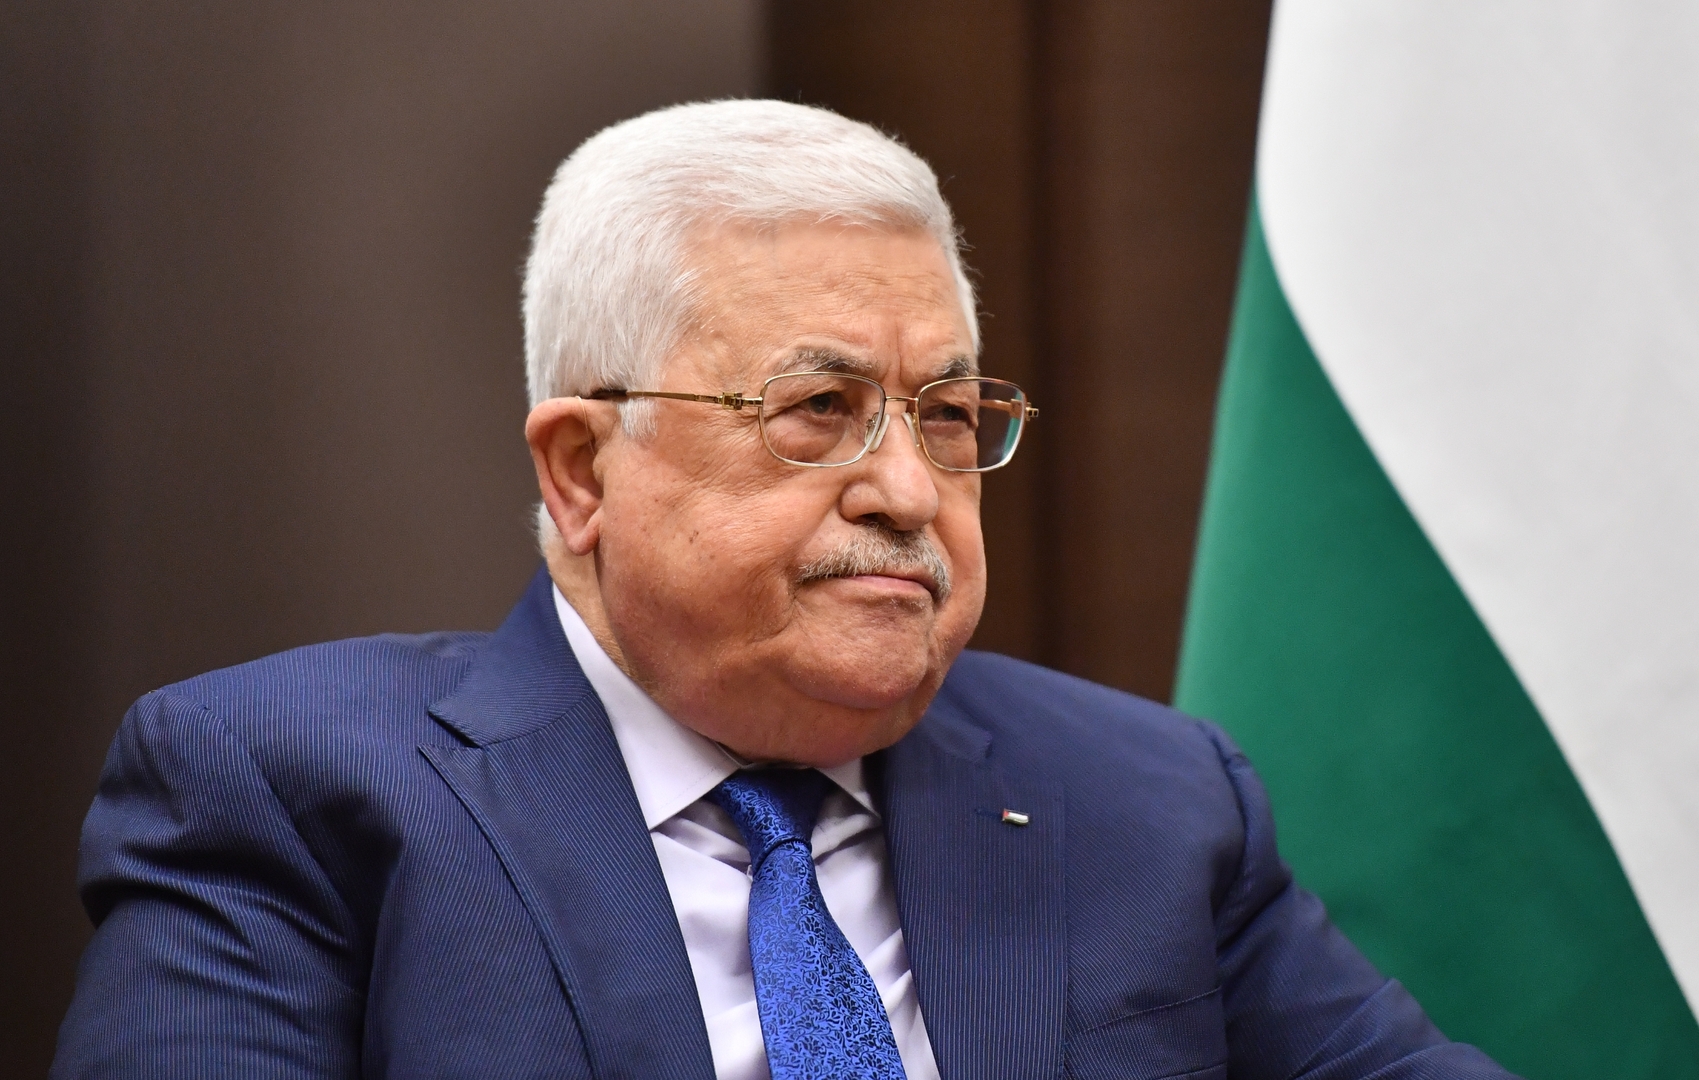 الرئيس الإسرائيلي يبعث برقية تعزية إلى محمود عباس بضحايا حادث سير أريحا